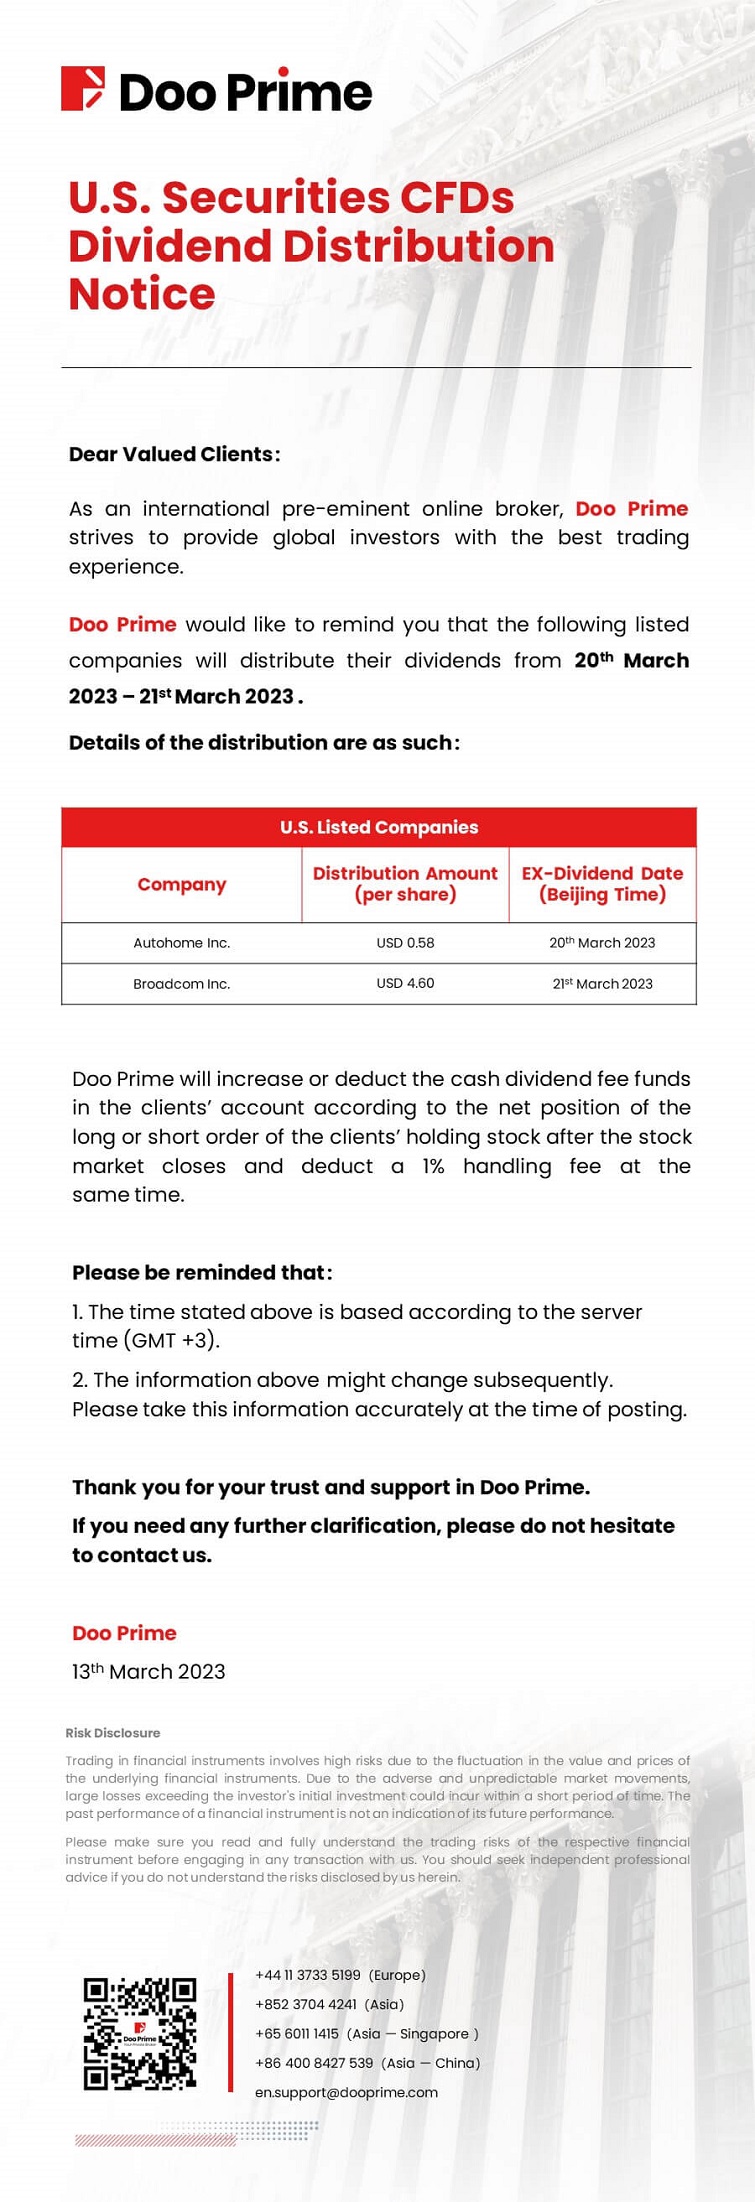 Doo Prime U.S. Securities CFDs Dividend Distribution Notice